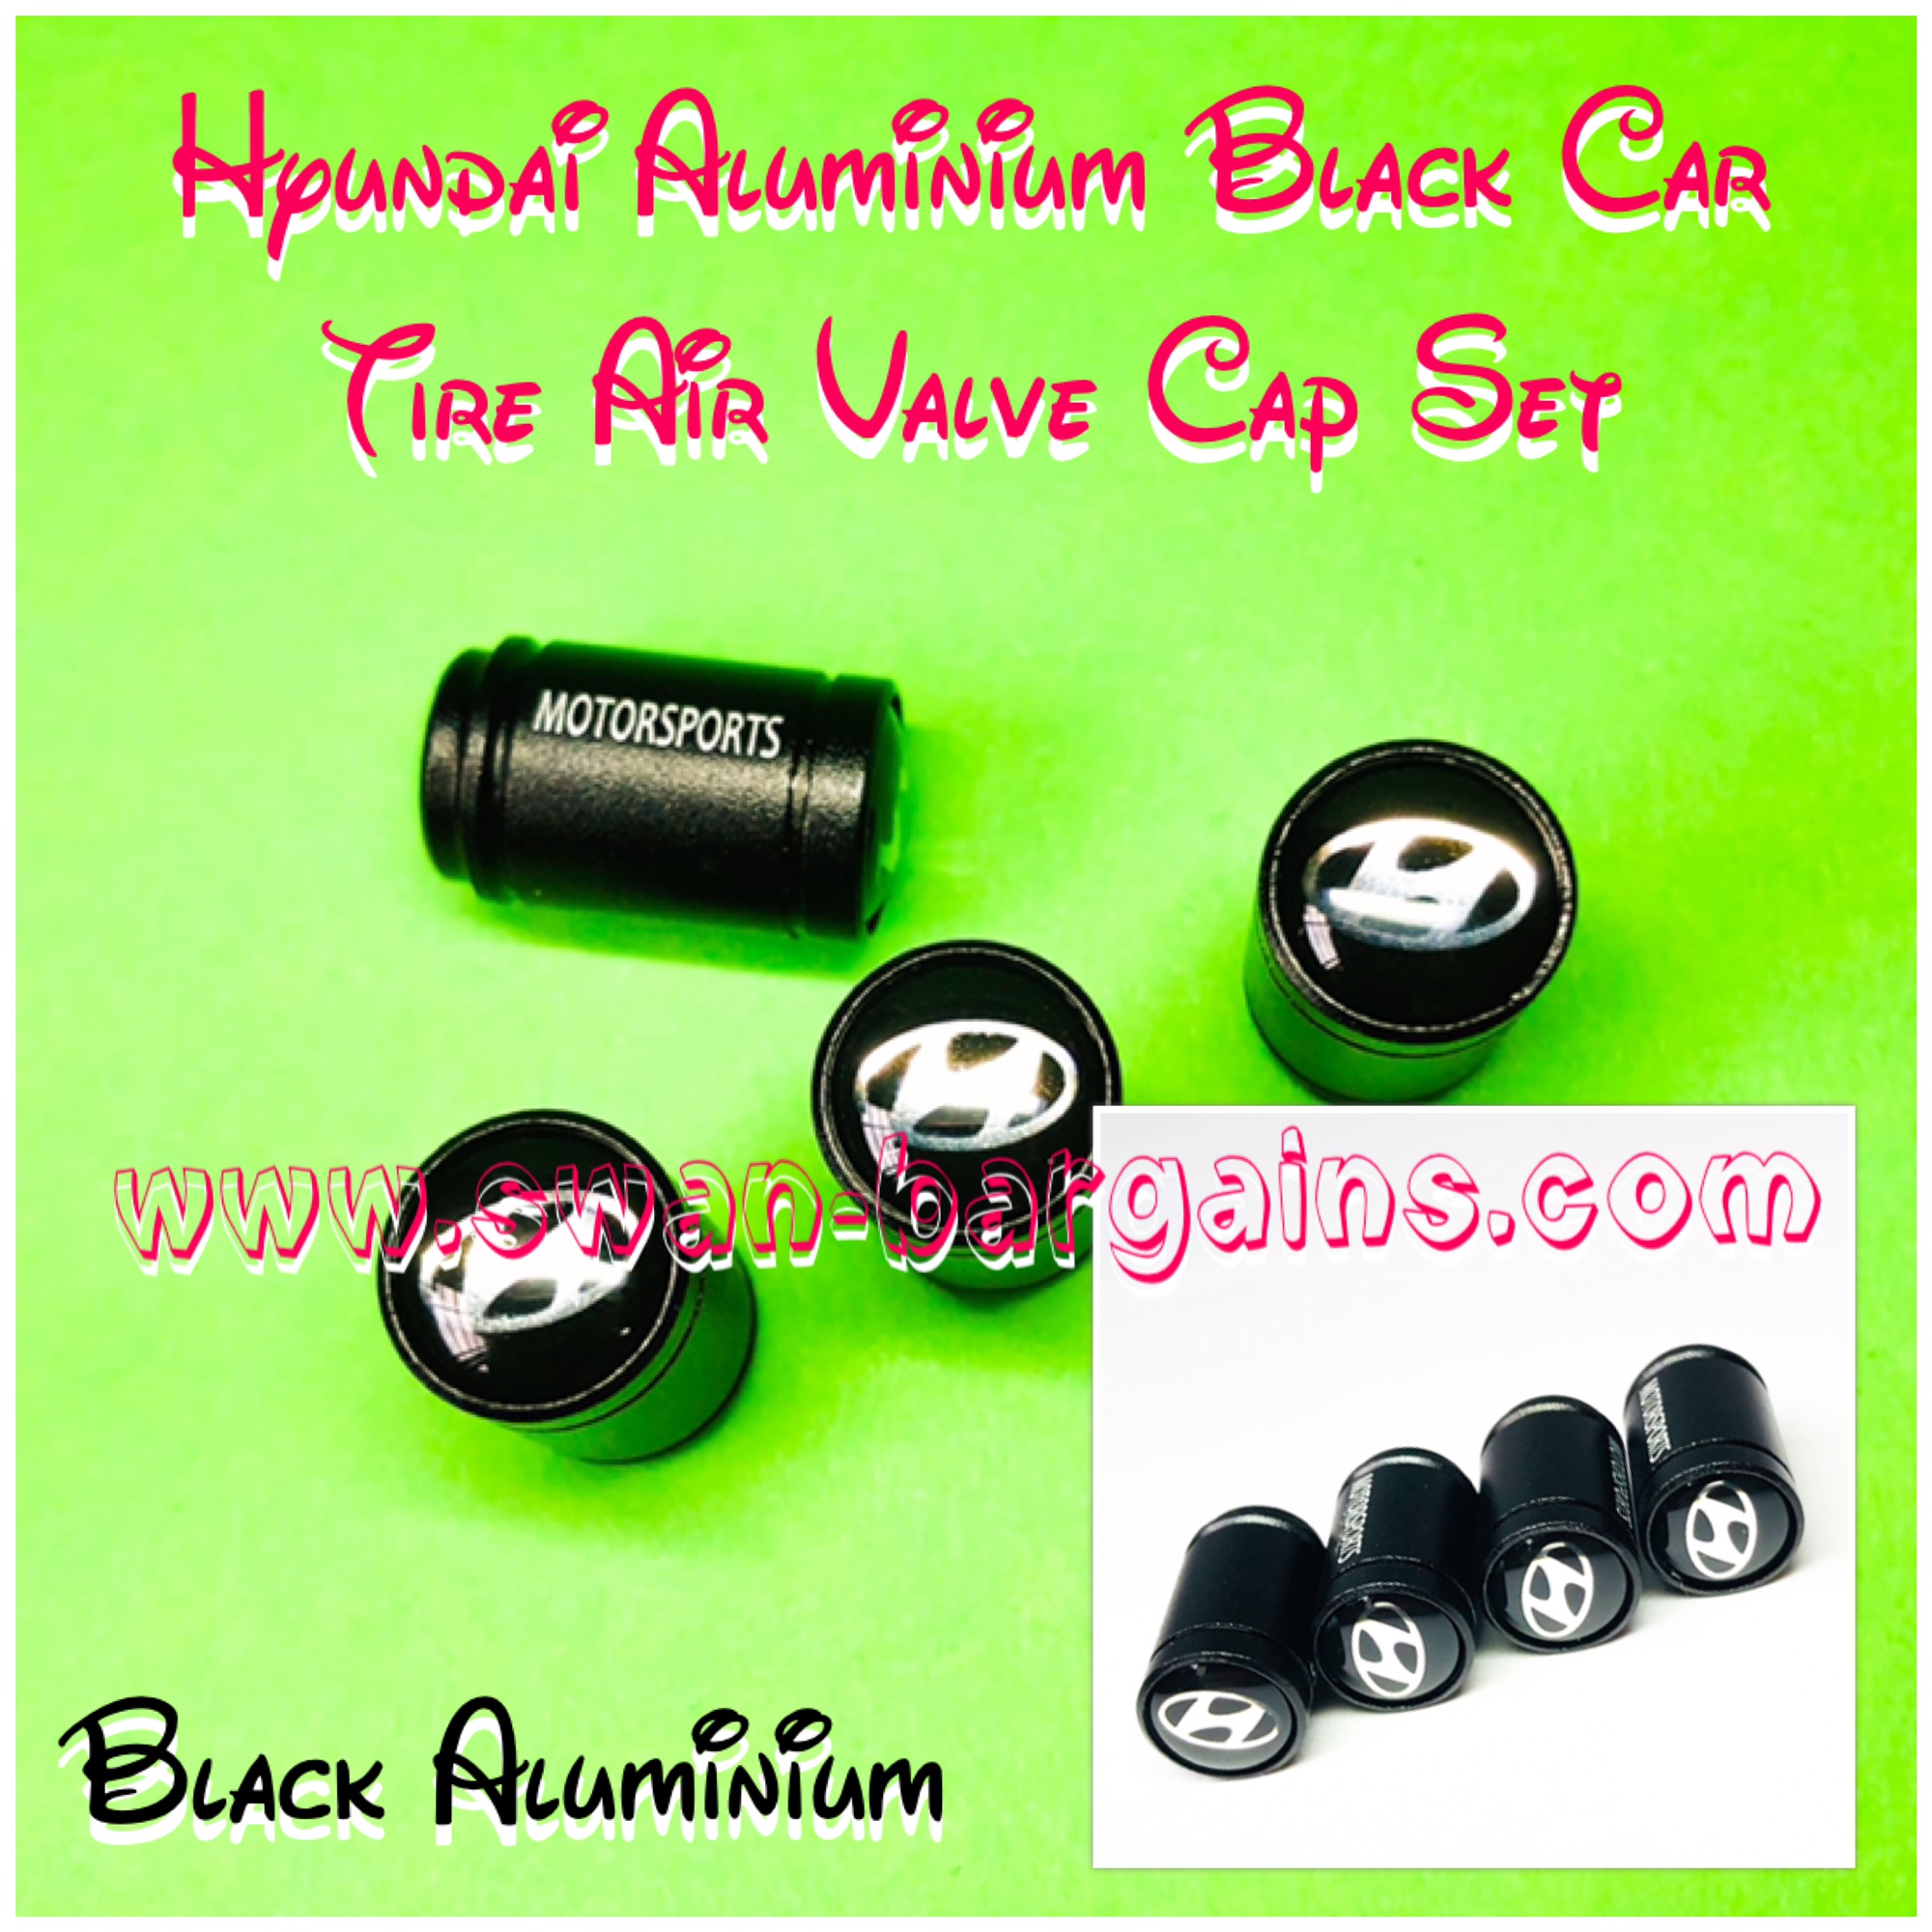 Aluminium Hyundai Tyre Stem Valve Tire Cap Cover Singapore - Matte Black